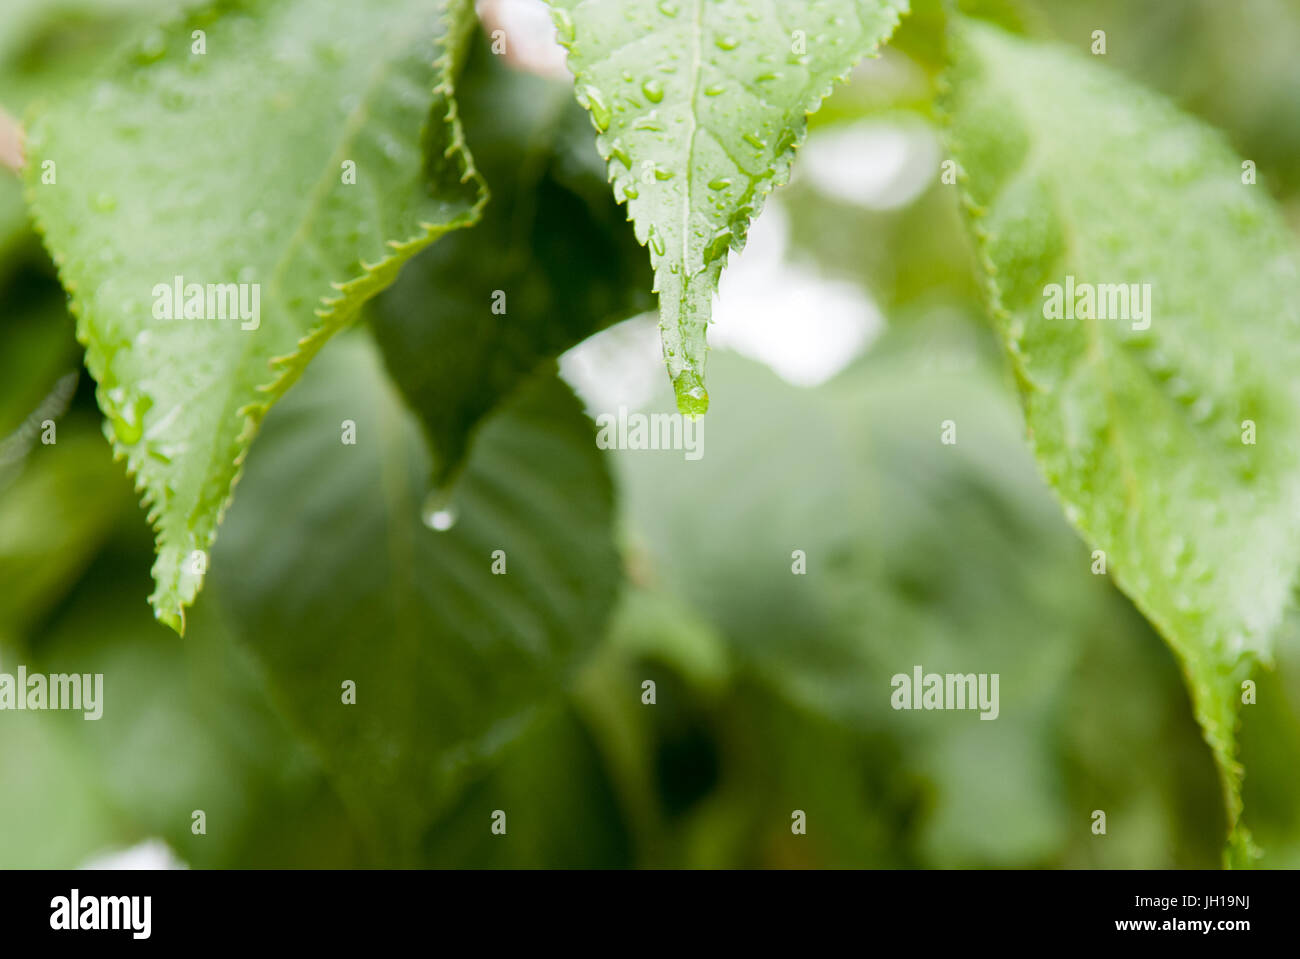 Goutte d'eau de pluie sur une feuille verte Banque D'Images